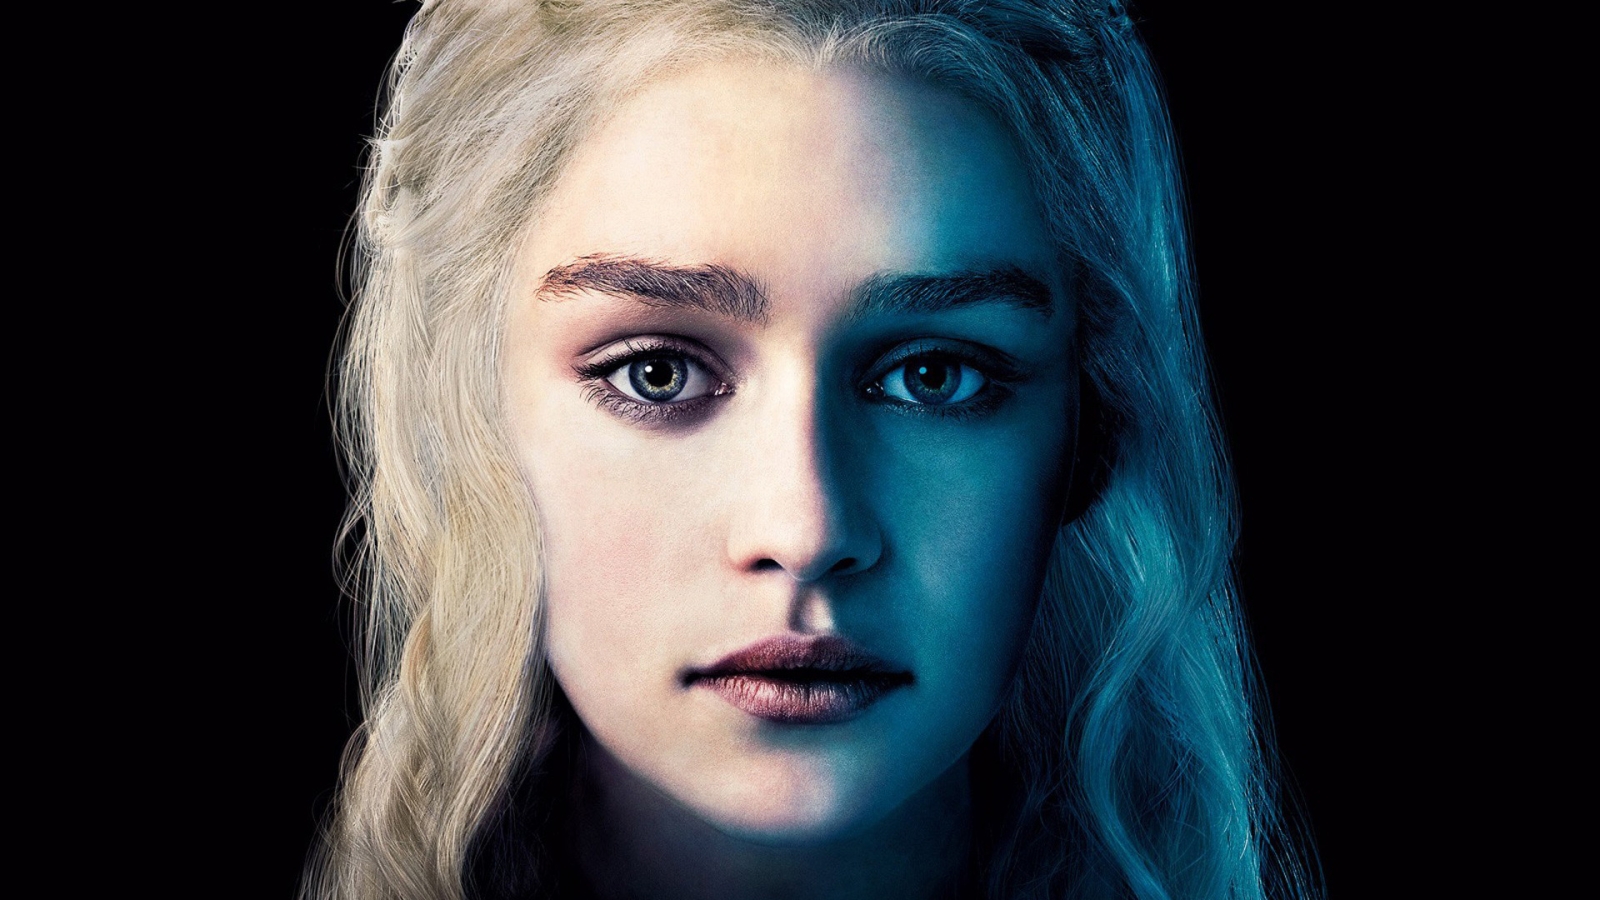 Daenerys Targaryen for 1600 x 900 HDTV resolution